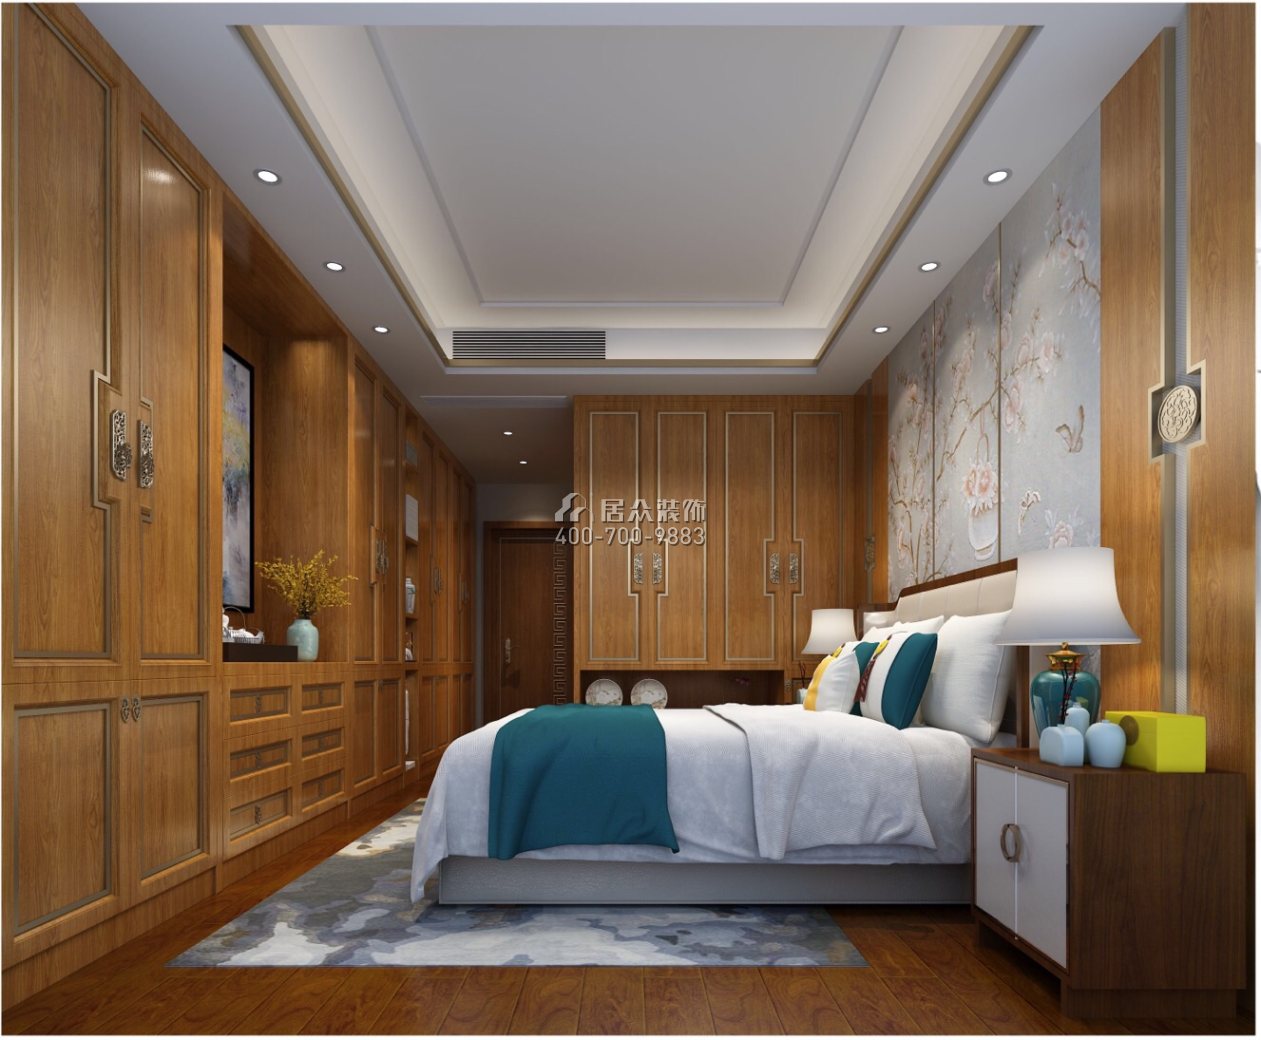 乐城120平方米中式风格平层户型卧室装修效果图